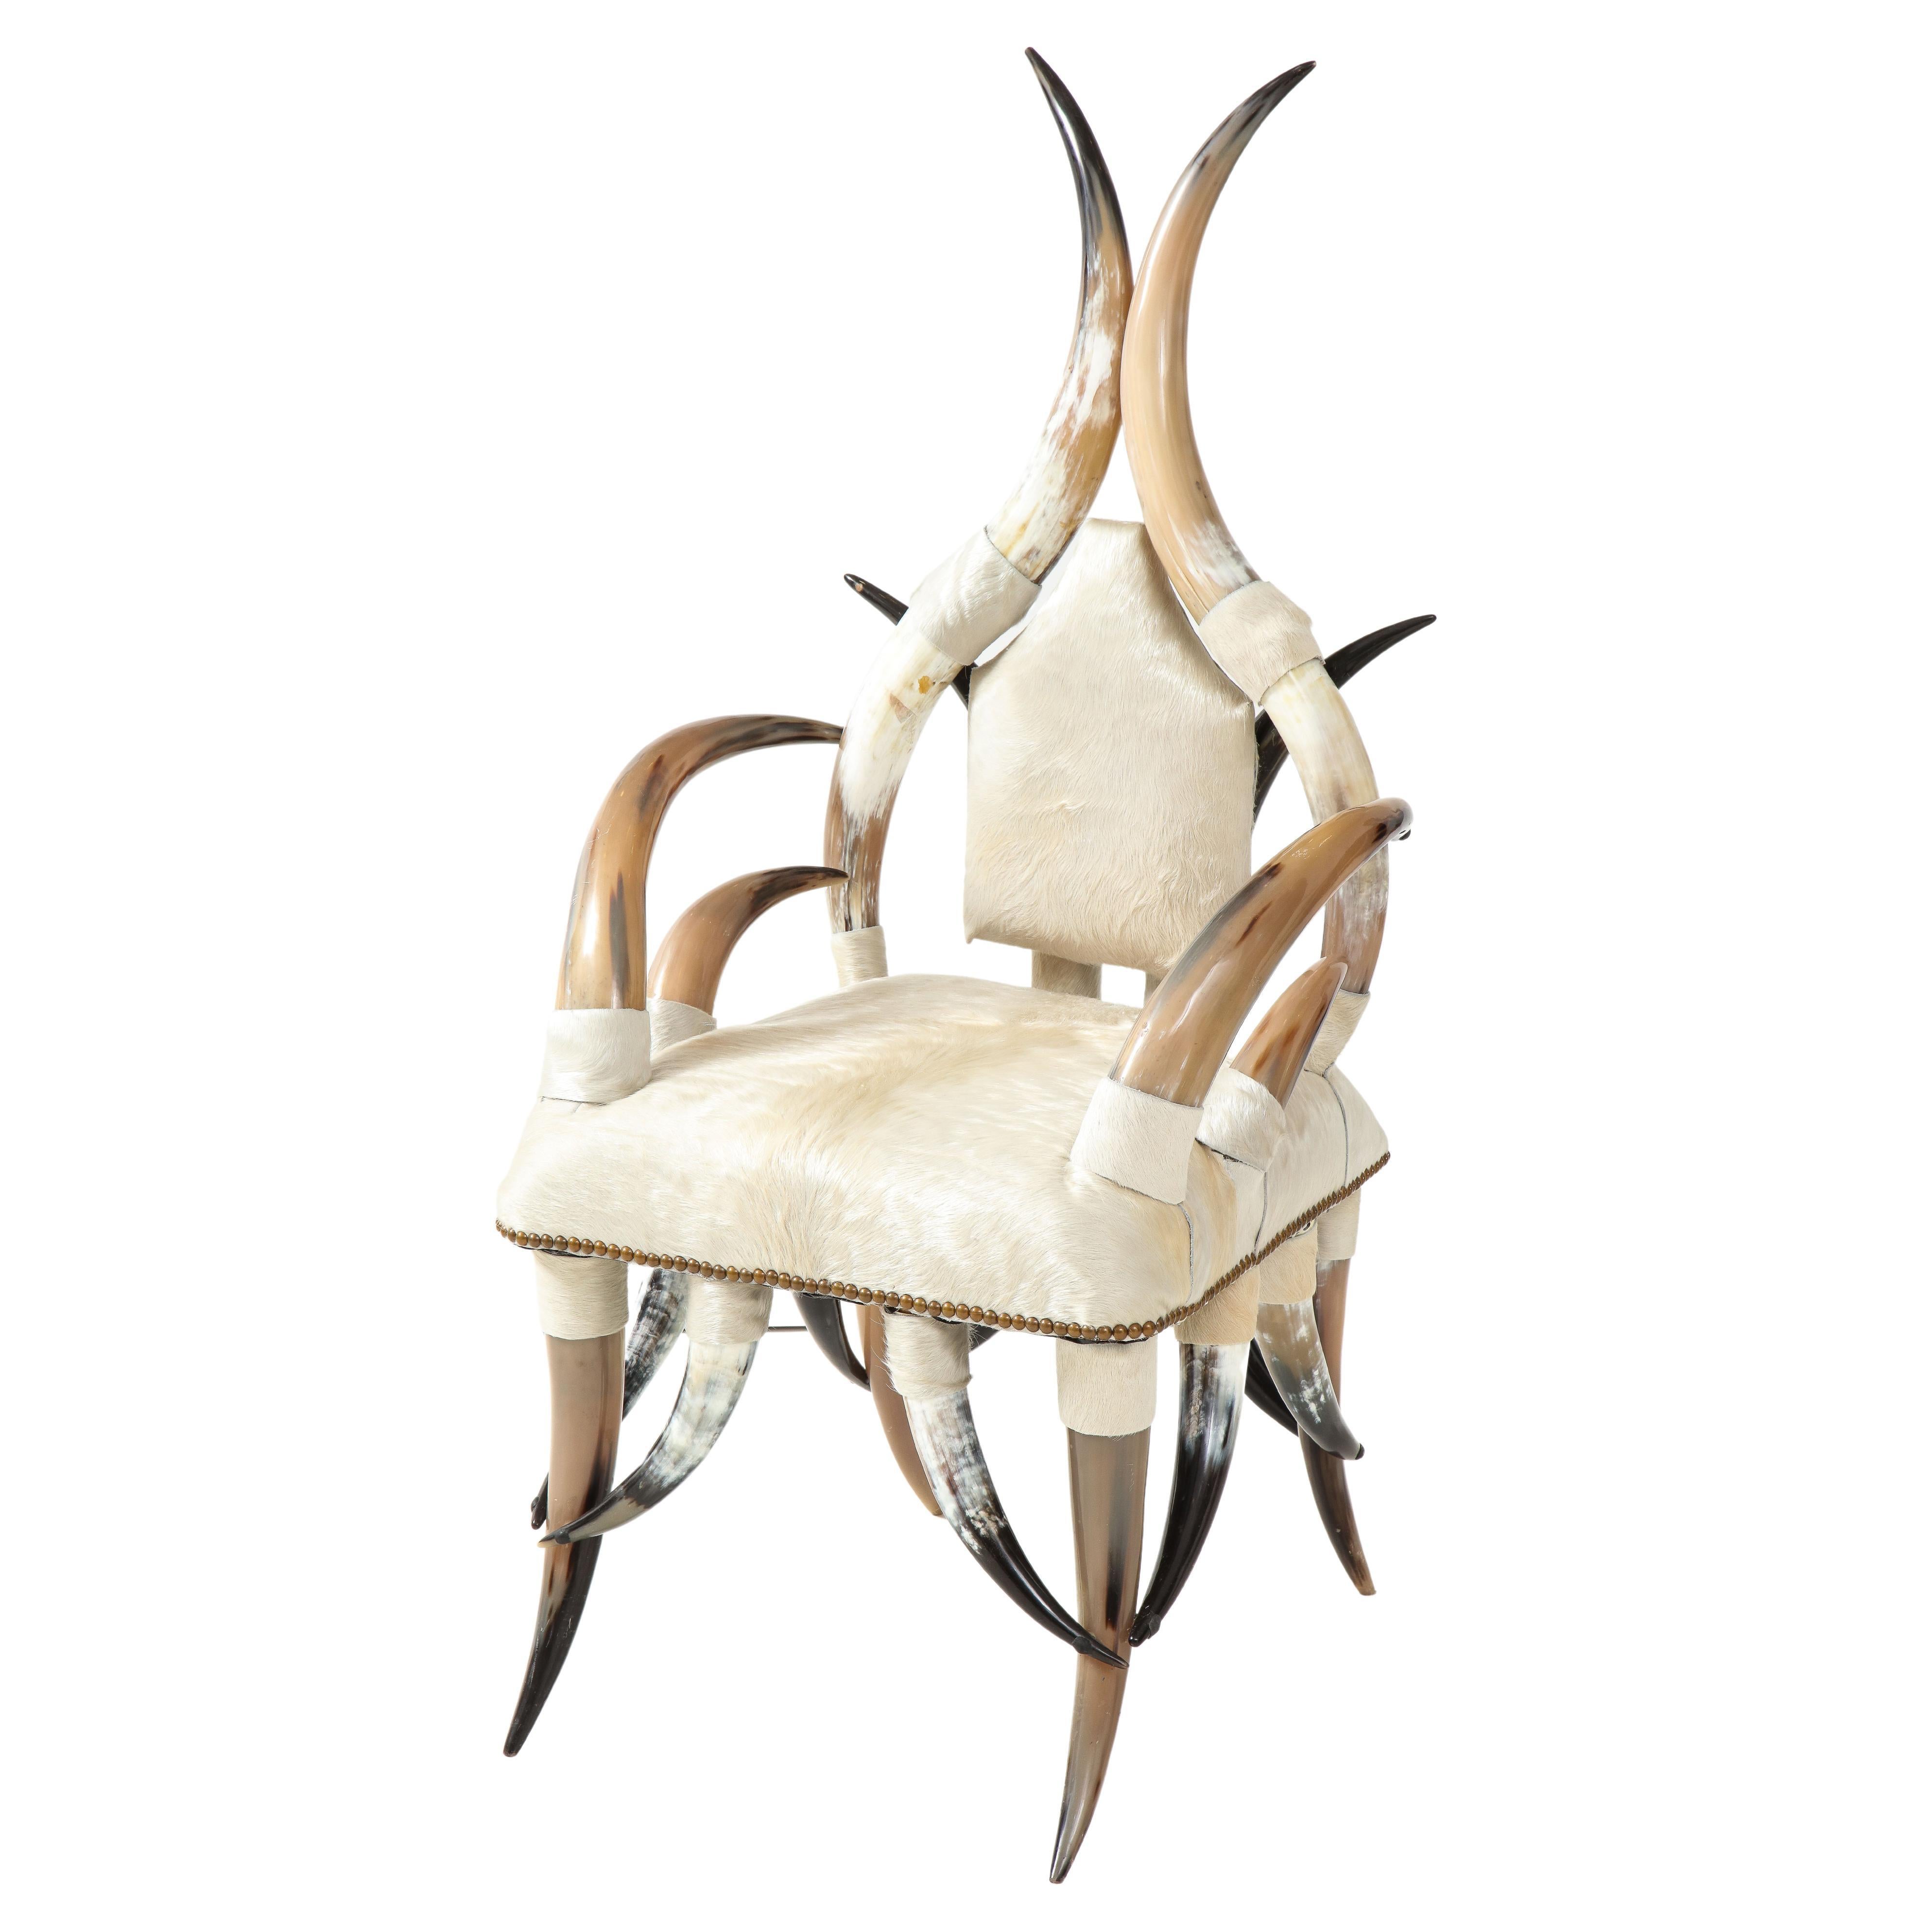 American Steer Horn, White Hide Chair